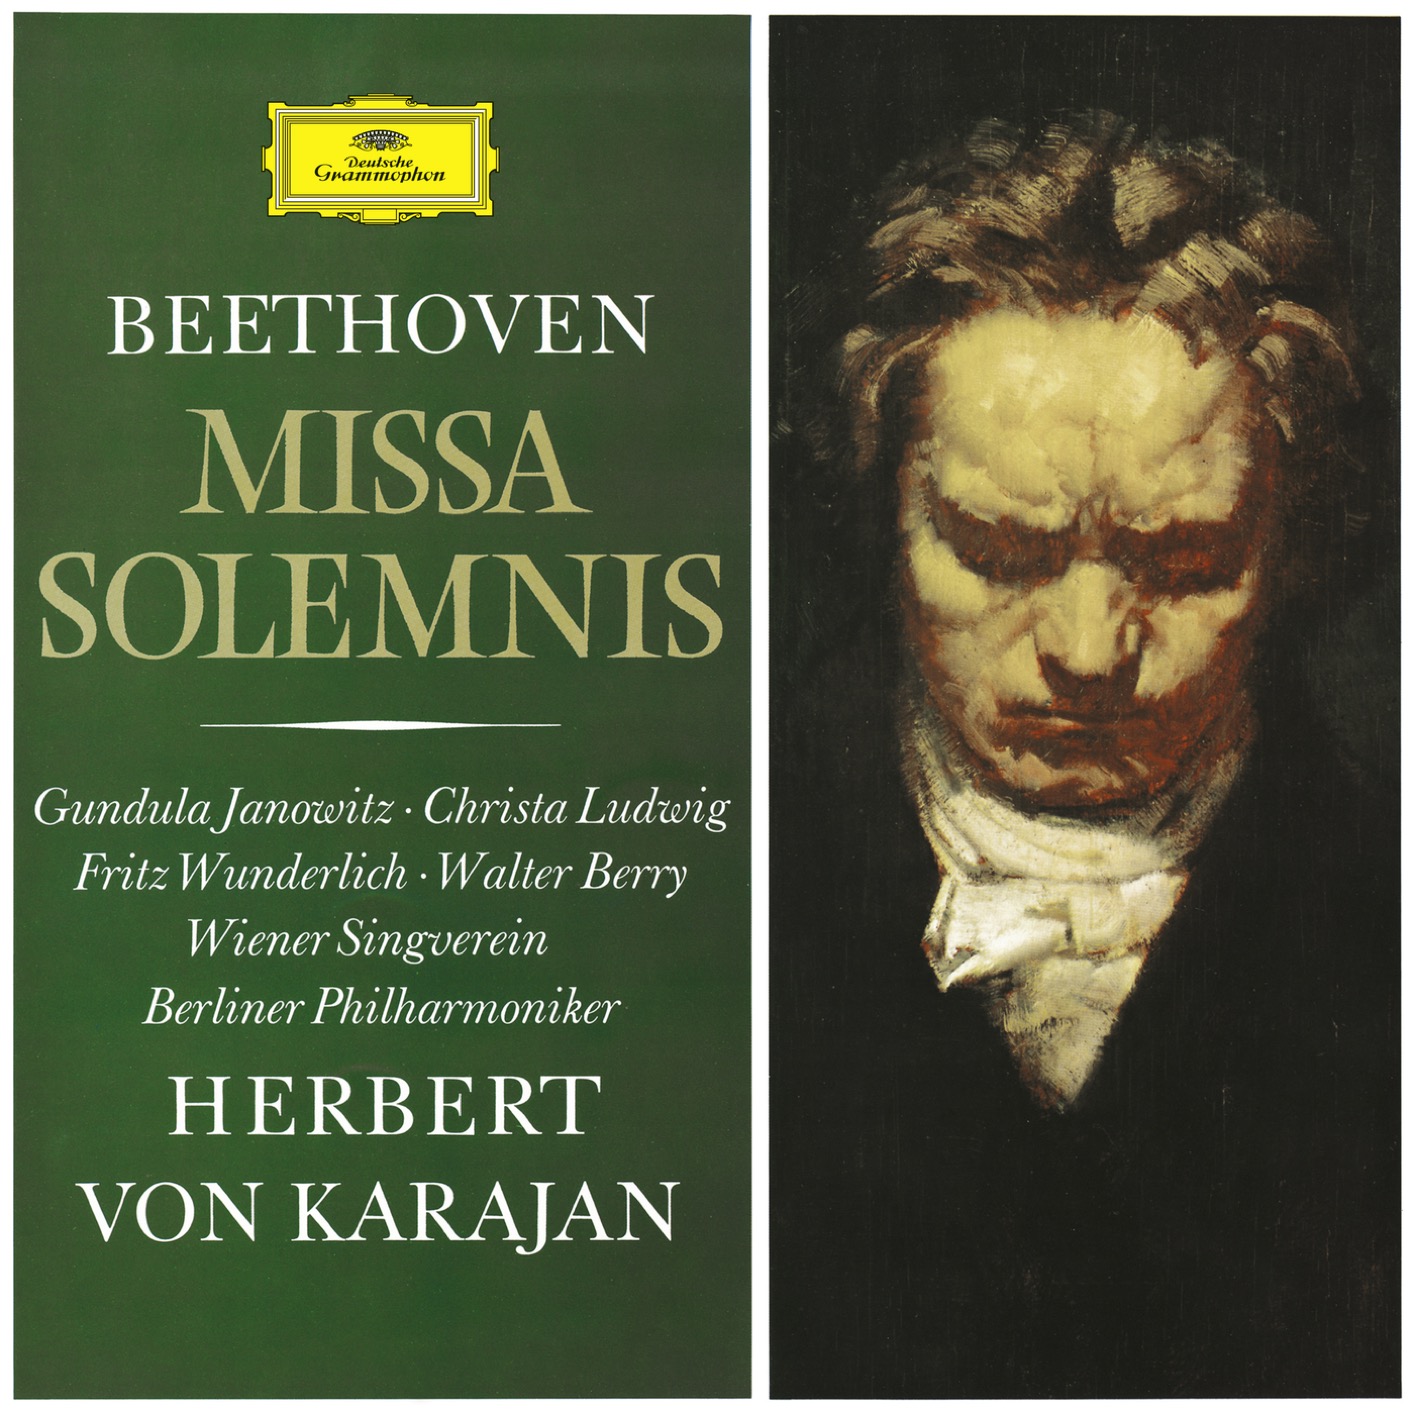 Berliner Philharmoniker & Herbert von Karajan - Beethoven: Missa Solemnis, Op. 123 (Remastered) (1966/2020) [FLAC 24bit/192kHz]